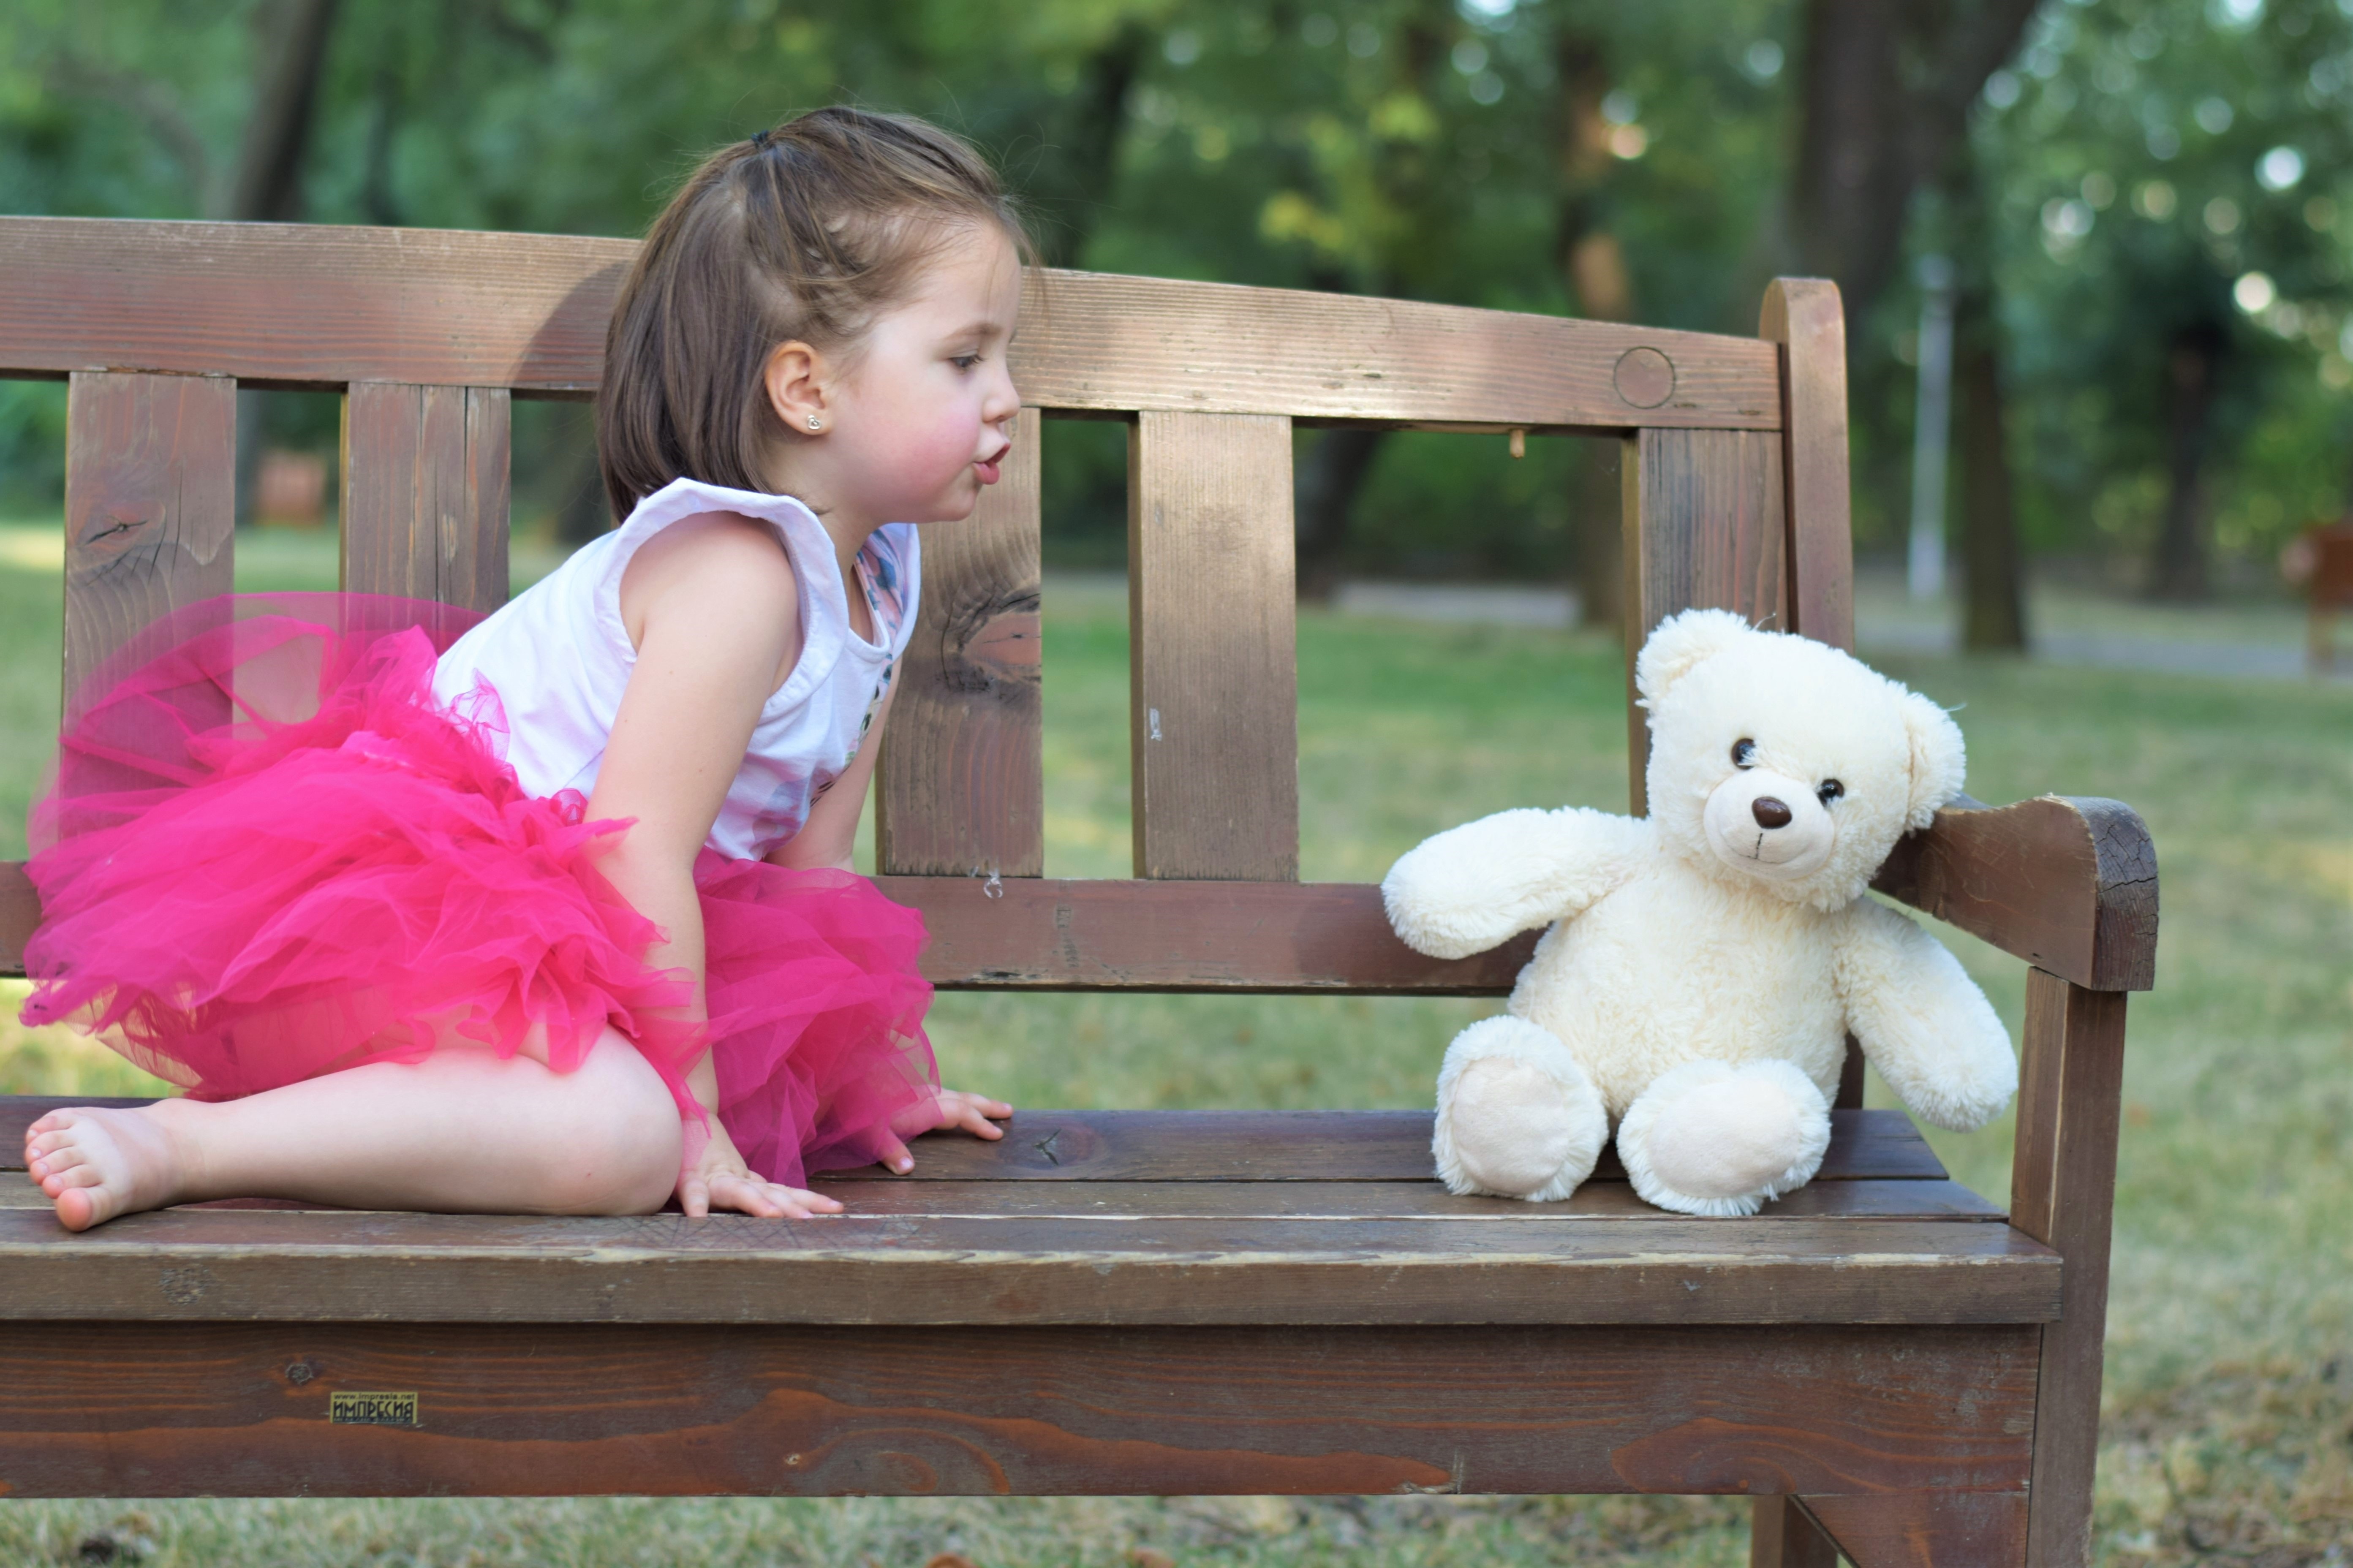 Brown haired girl wearing pink tutu dress near white bear plush toy photo